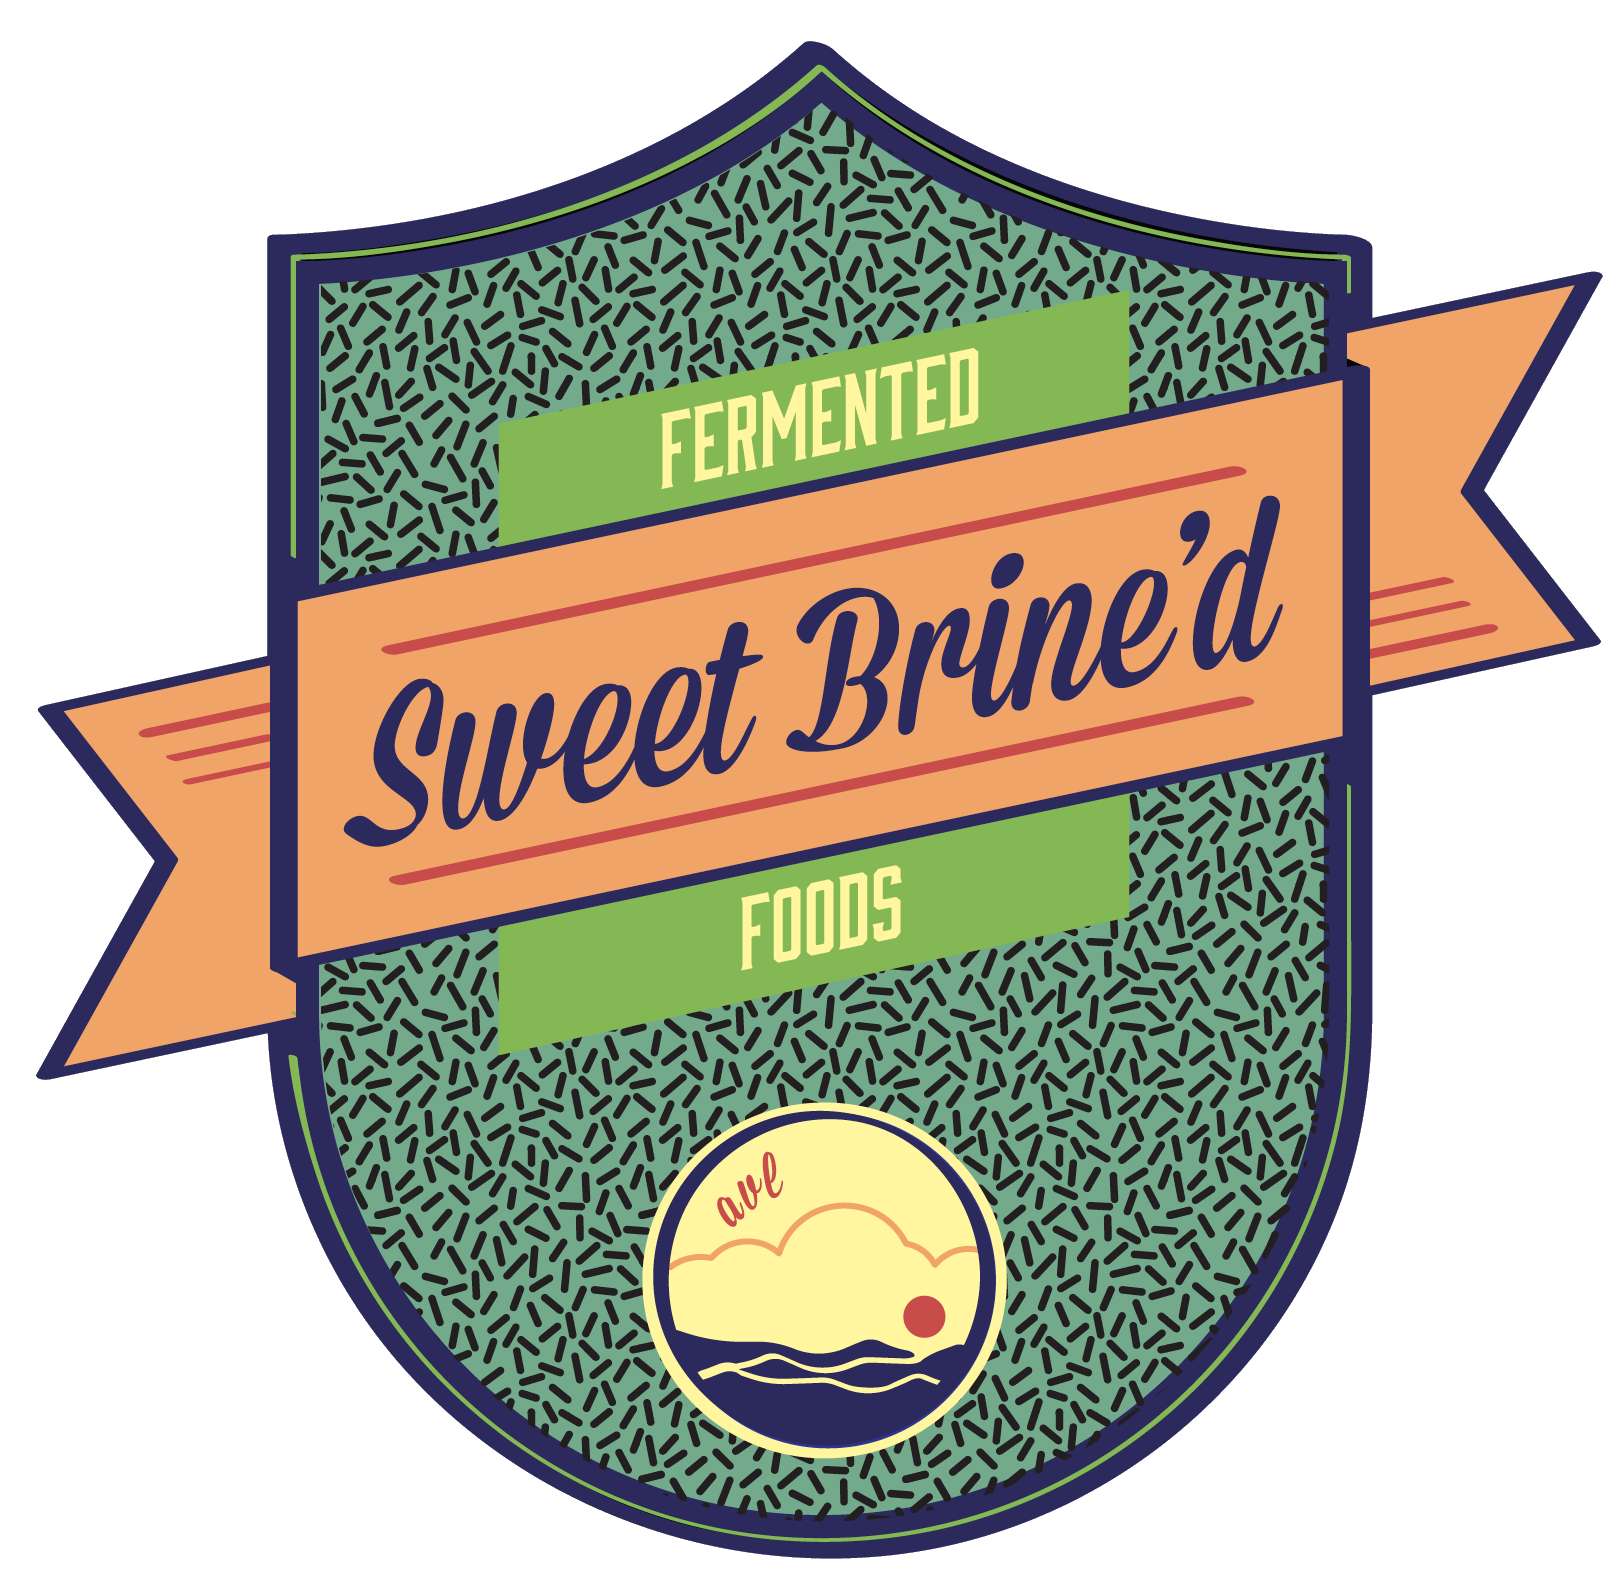 Sweet Brine'd Fermented Foods